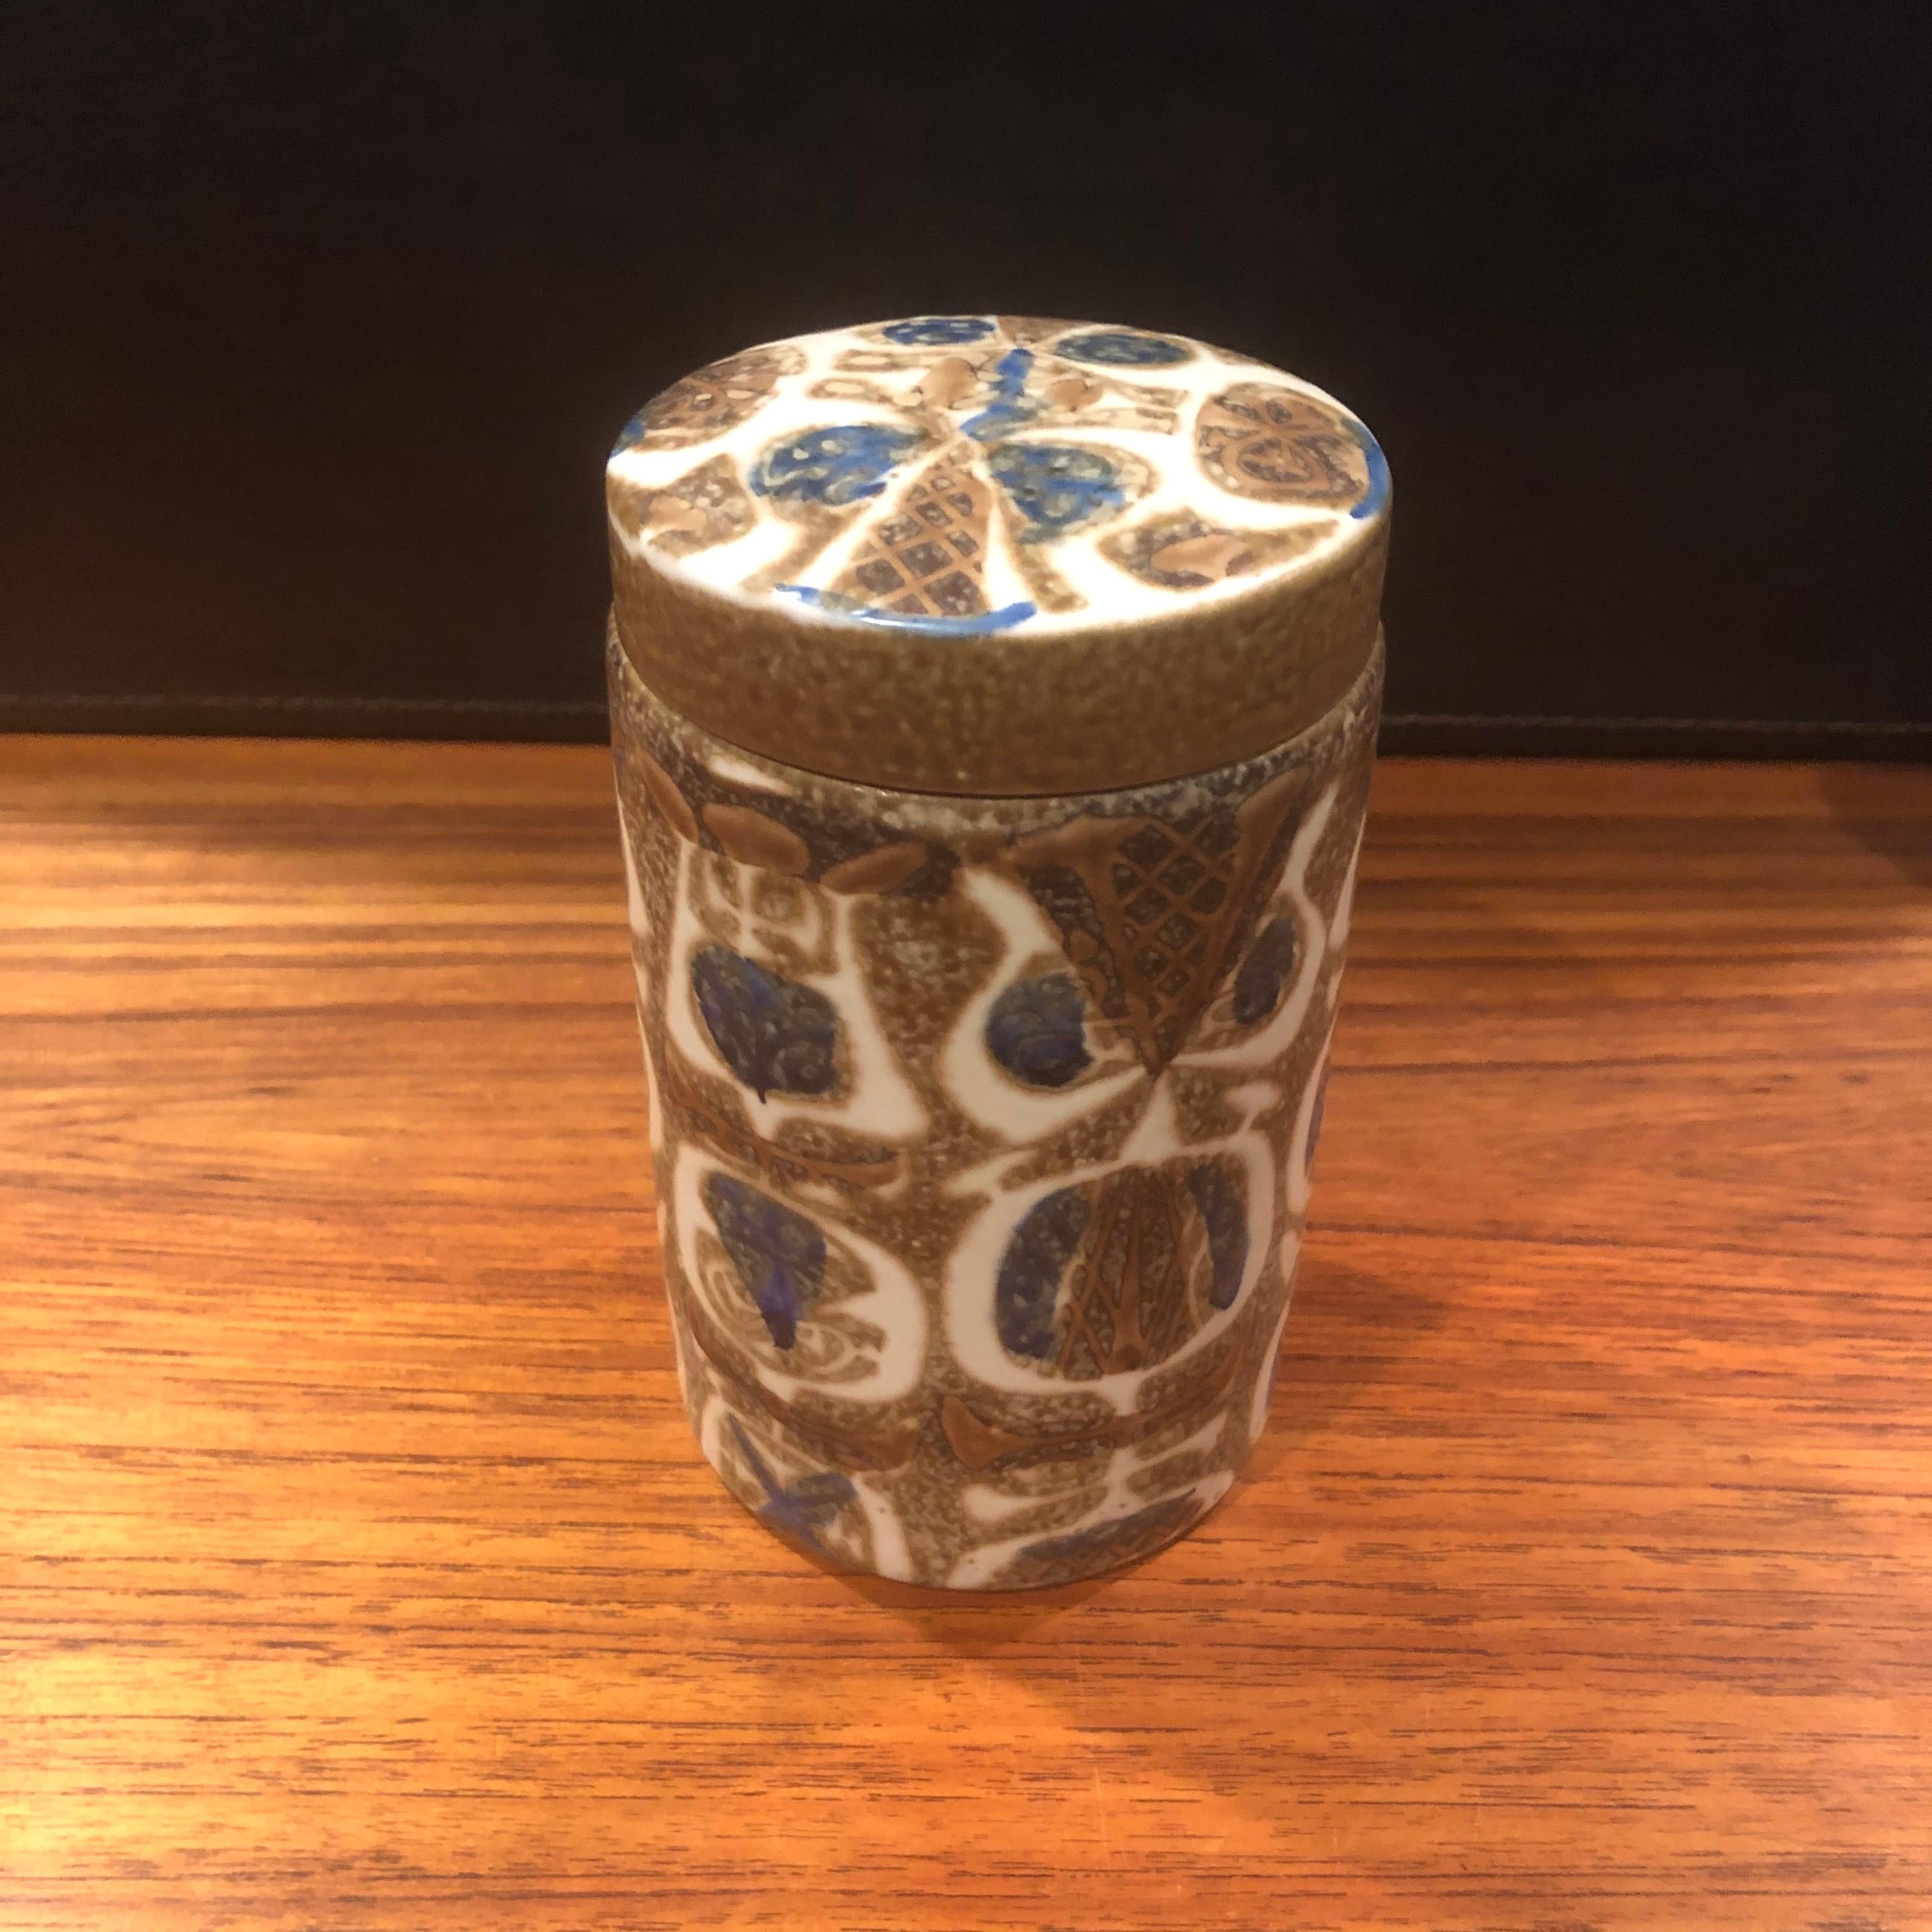 Pot à couvercle / humidor en céramique Fajance de la ligne Baca de Nils Thorsson pour Royal Copenhagen, vers les années 1960. Cette jarre en grès émaillé brun, havane et bleu avec un motif géométrique abstrait en relief a été conçue par le célèbre